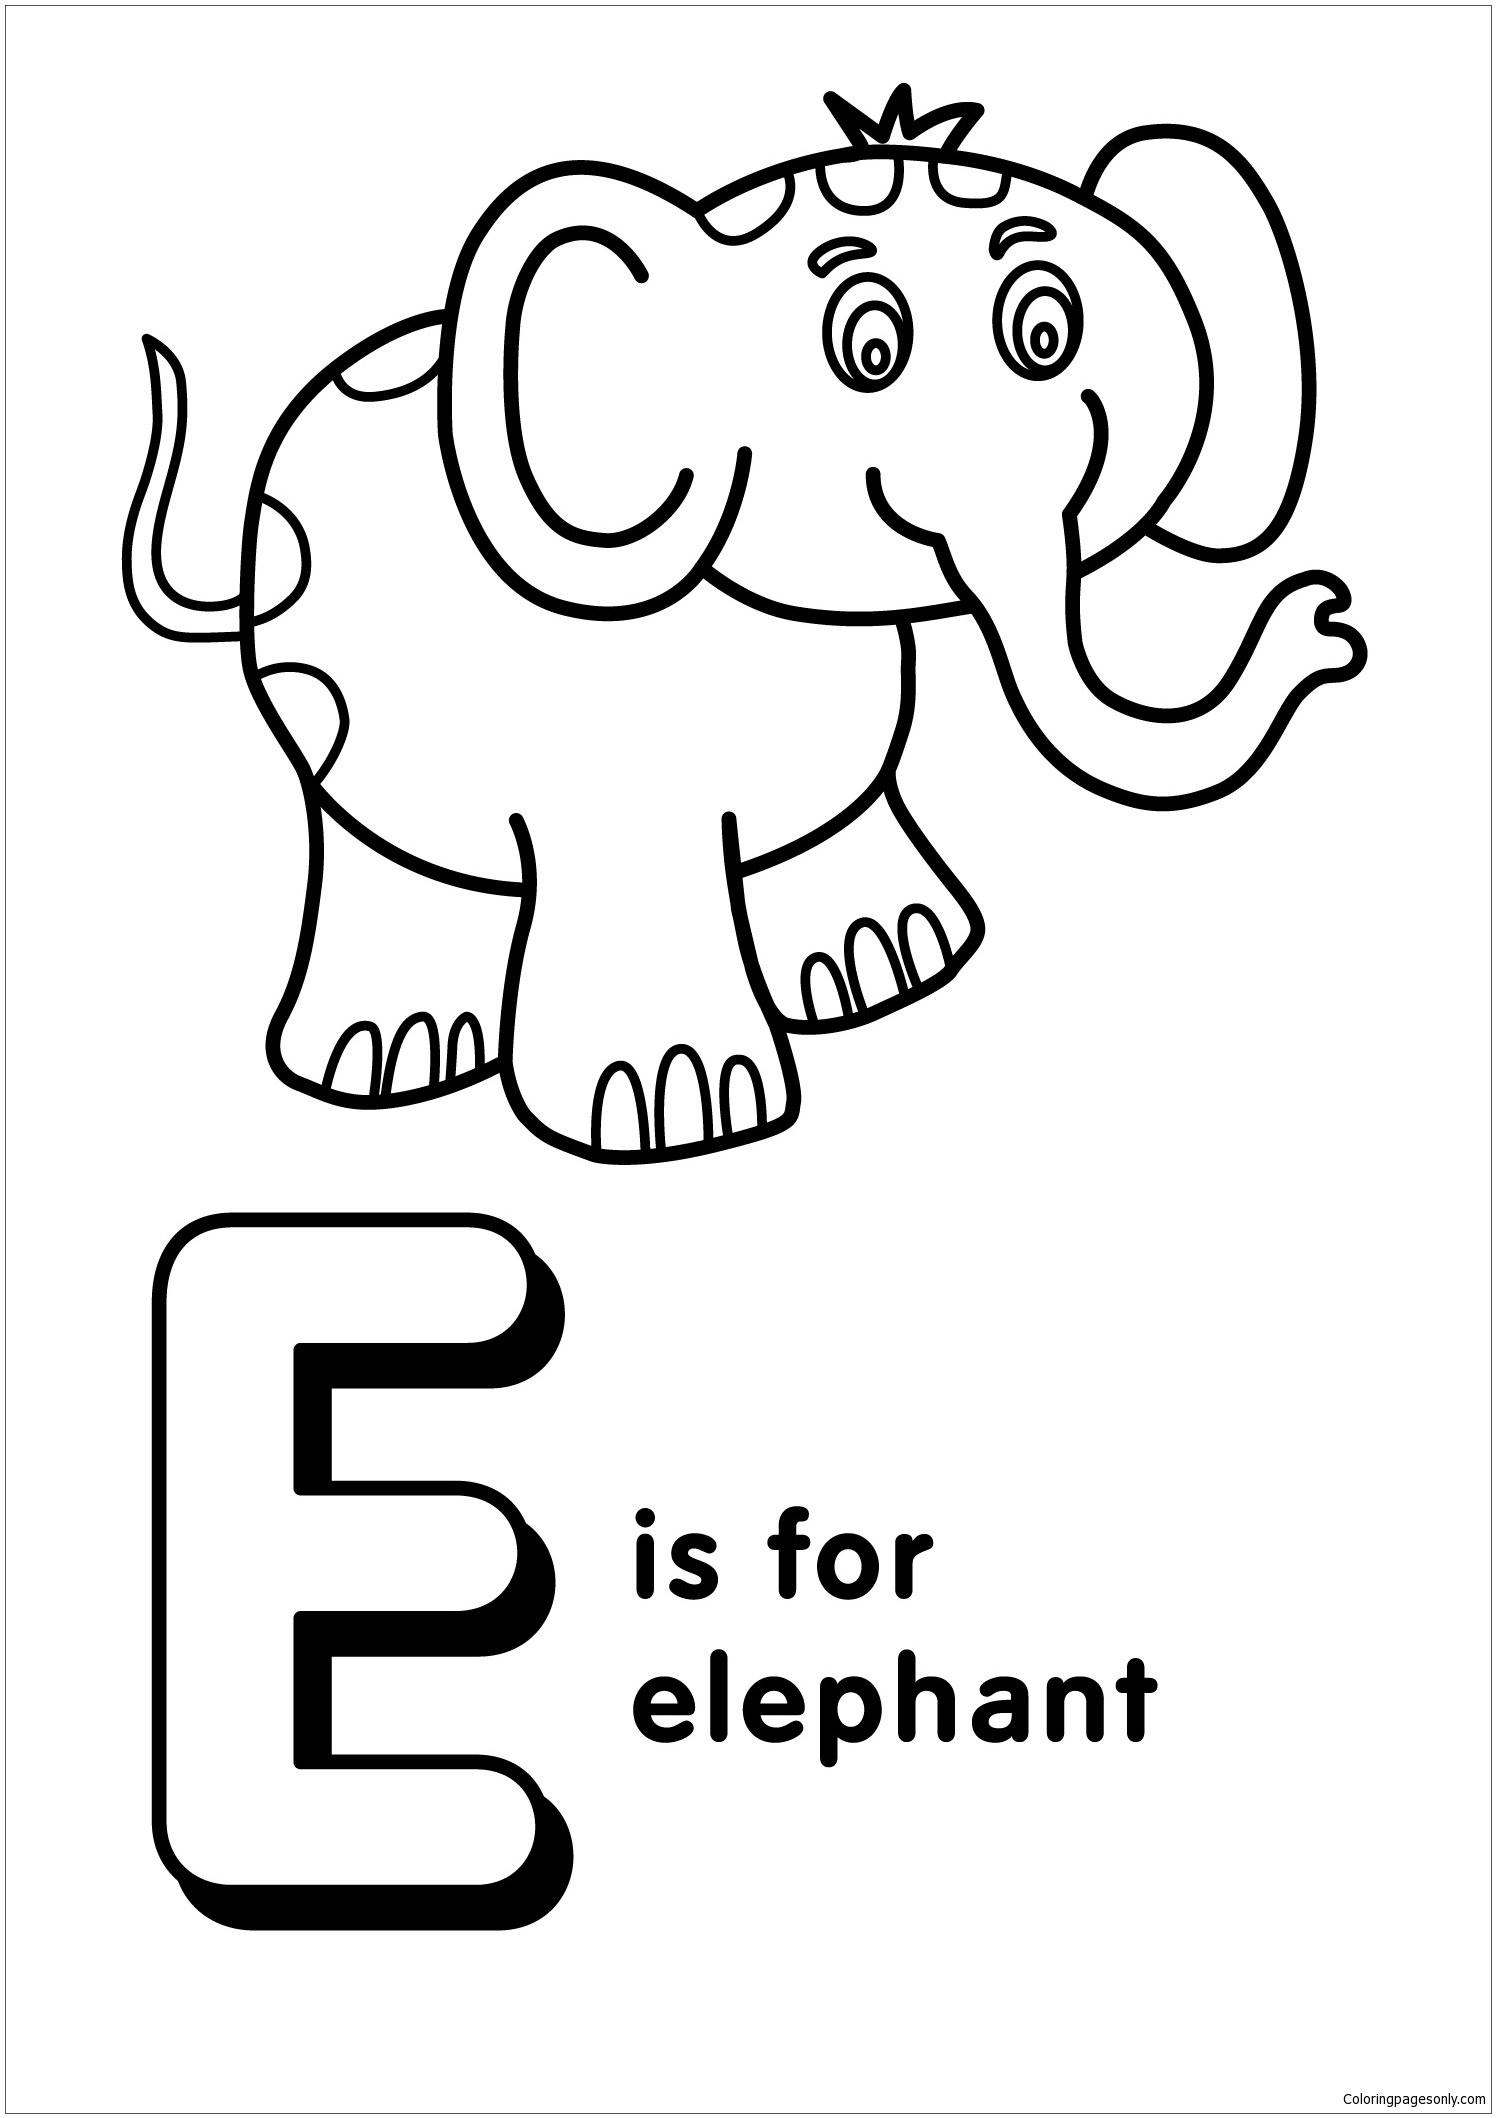 Буква Е соответствует Слону 2 из буквы Е.